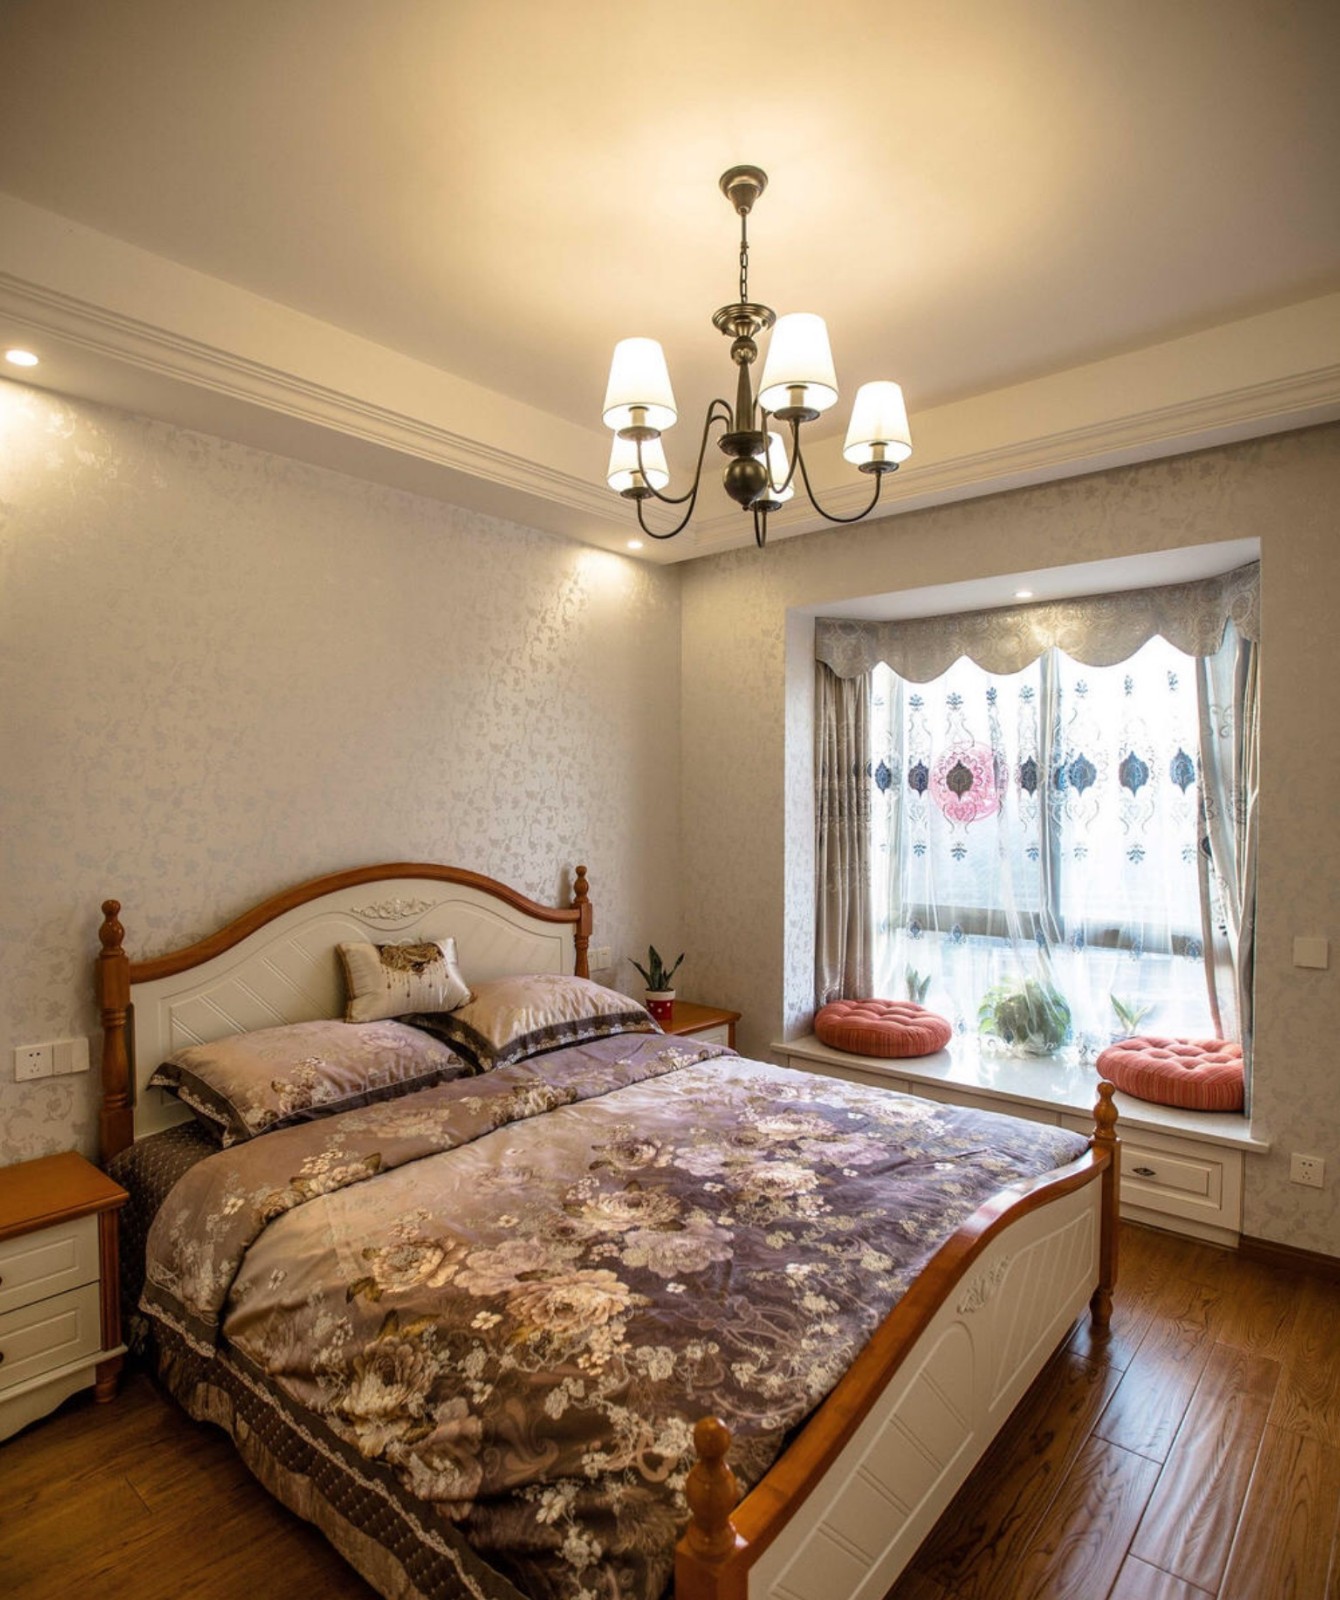 主卧床头背景都是简单的木线条做白漆,墙面贴无缝墙布,营造温馨简单的